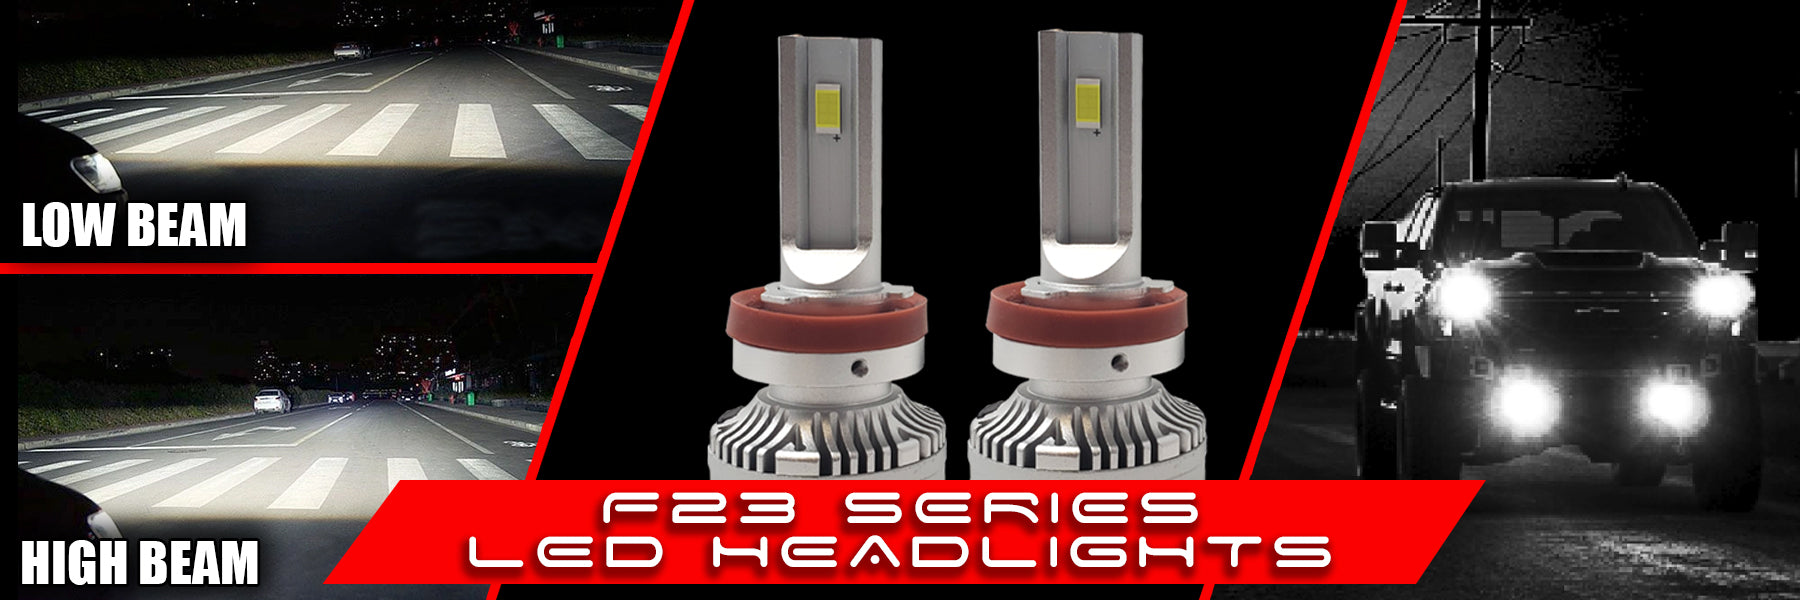 F23-Series LED Headlights